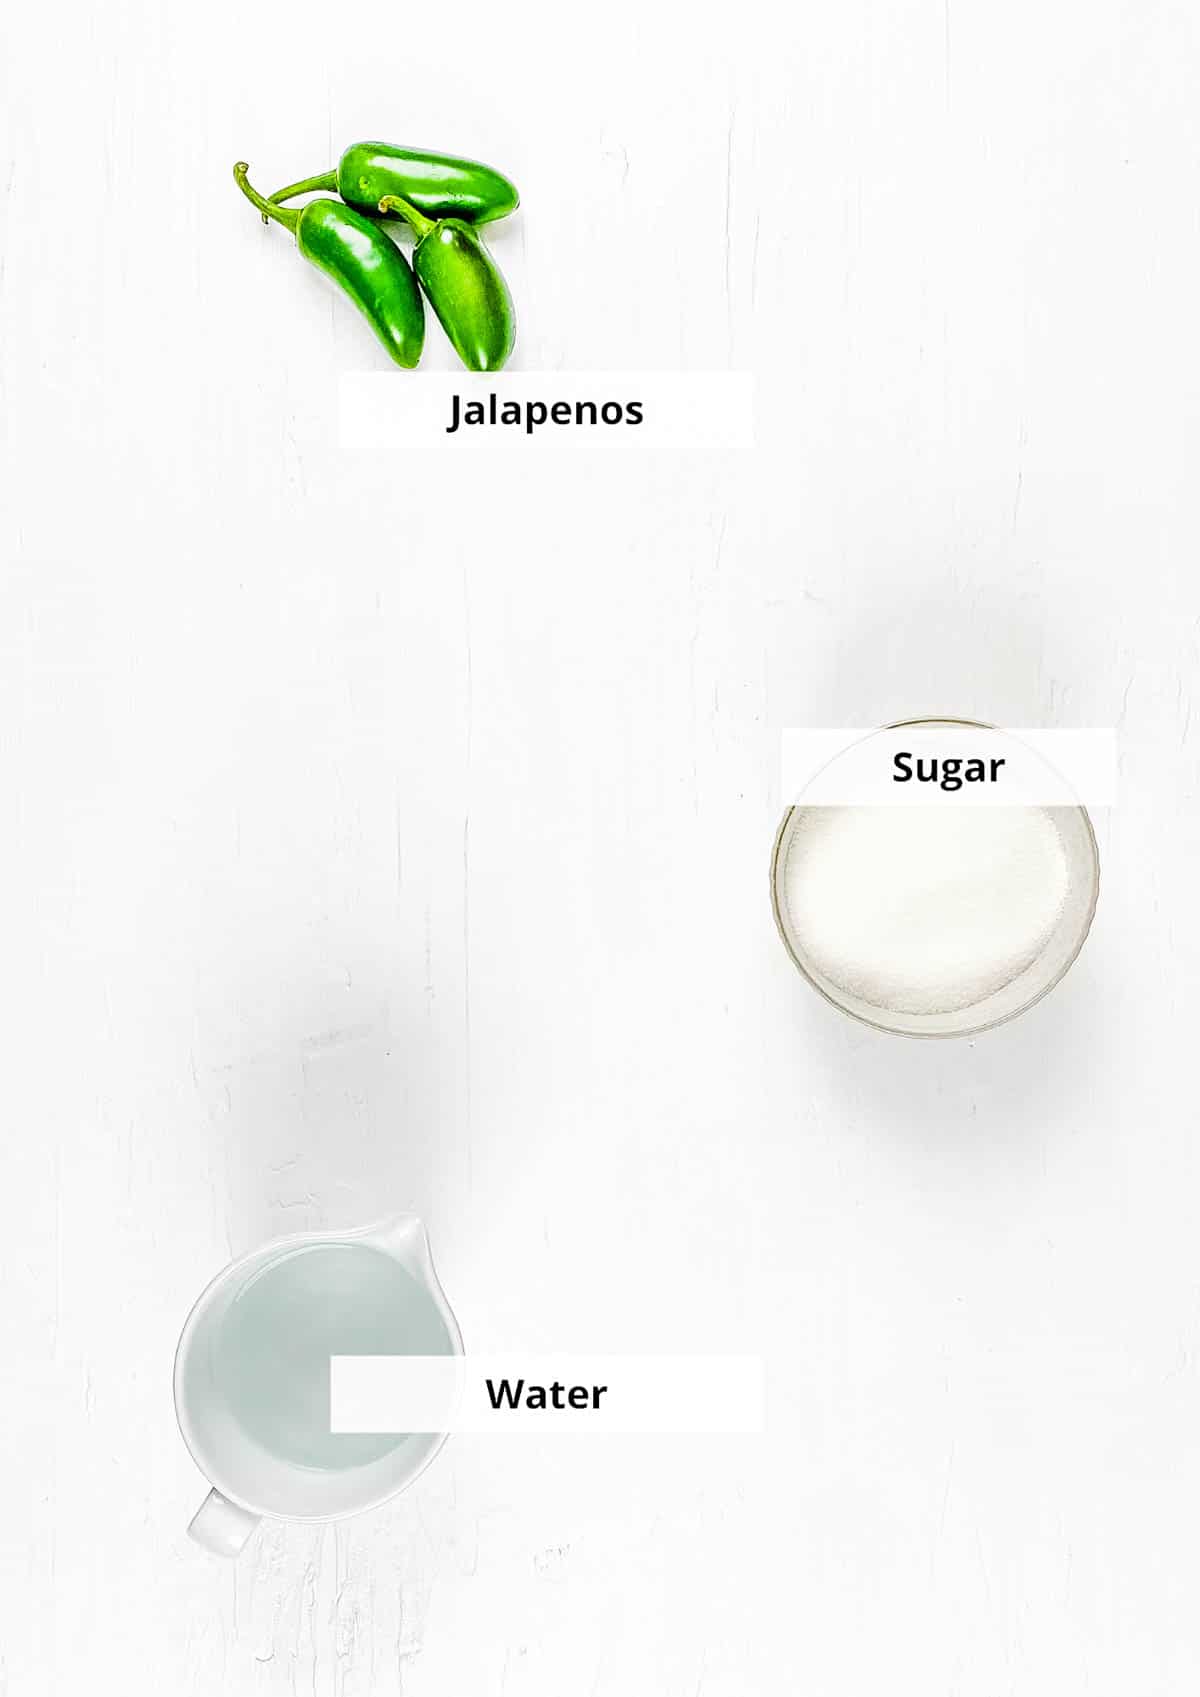 Ingrediënten voor eenvoudig zelfgemaakt jalapeno eenvoudig sirooprecept op een witte achtergrond.